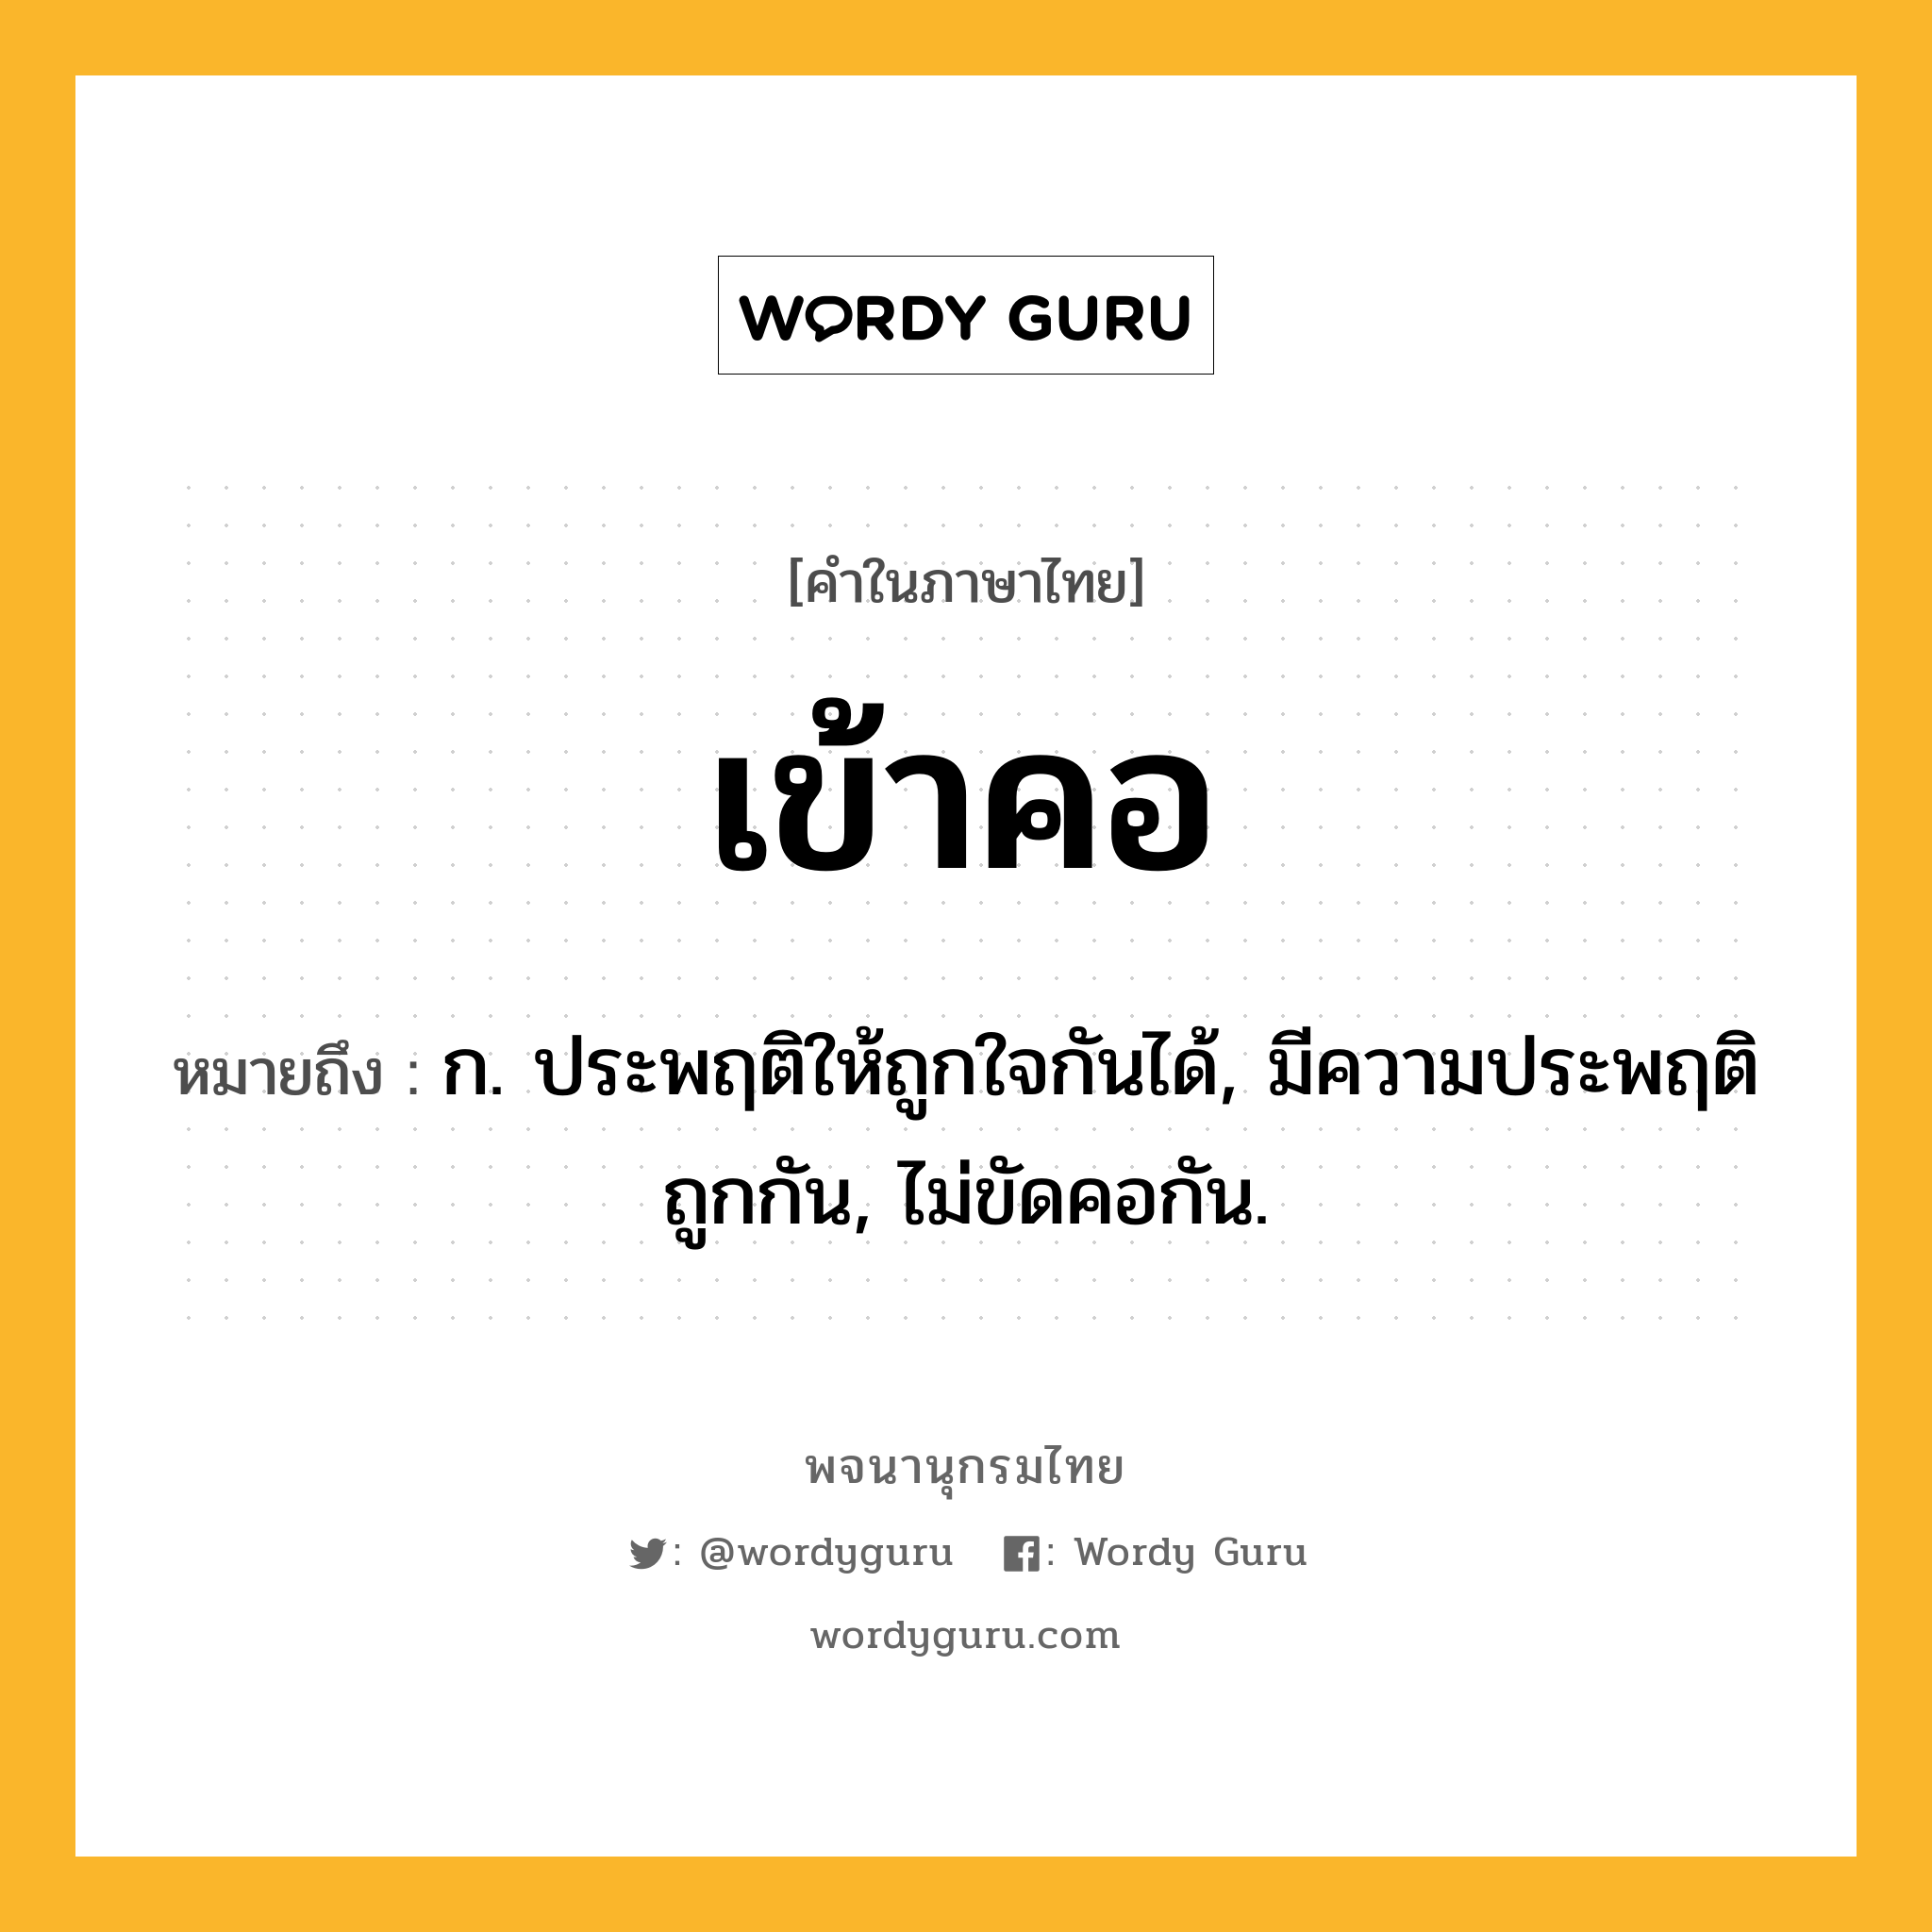 เข้าคอ ความหมาย หมายถึงอะไร?, คำในภาษาไทย เข้าคอ หมายถึง ก. ประพฤติให้ถูกใจกันได้, มีความประพฤติถูกกัน, ไม่ขัดคอกัน.